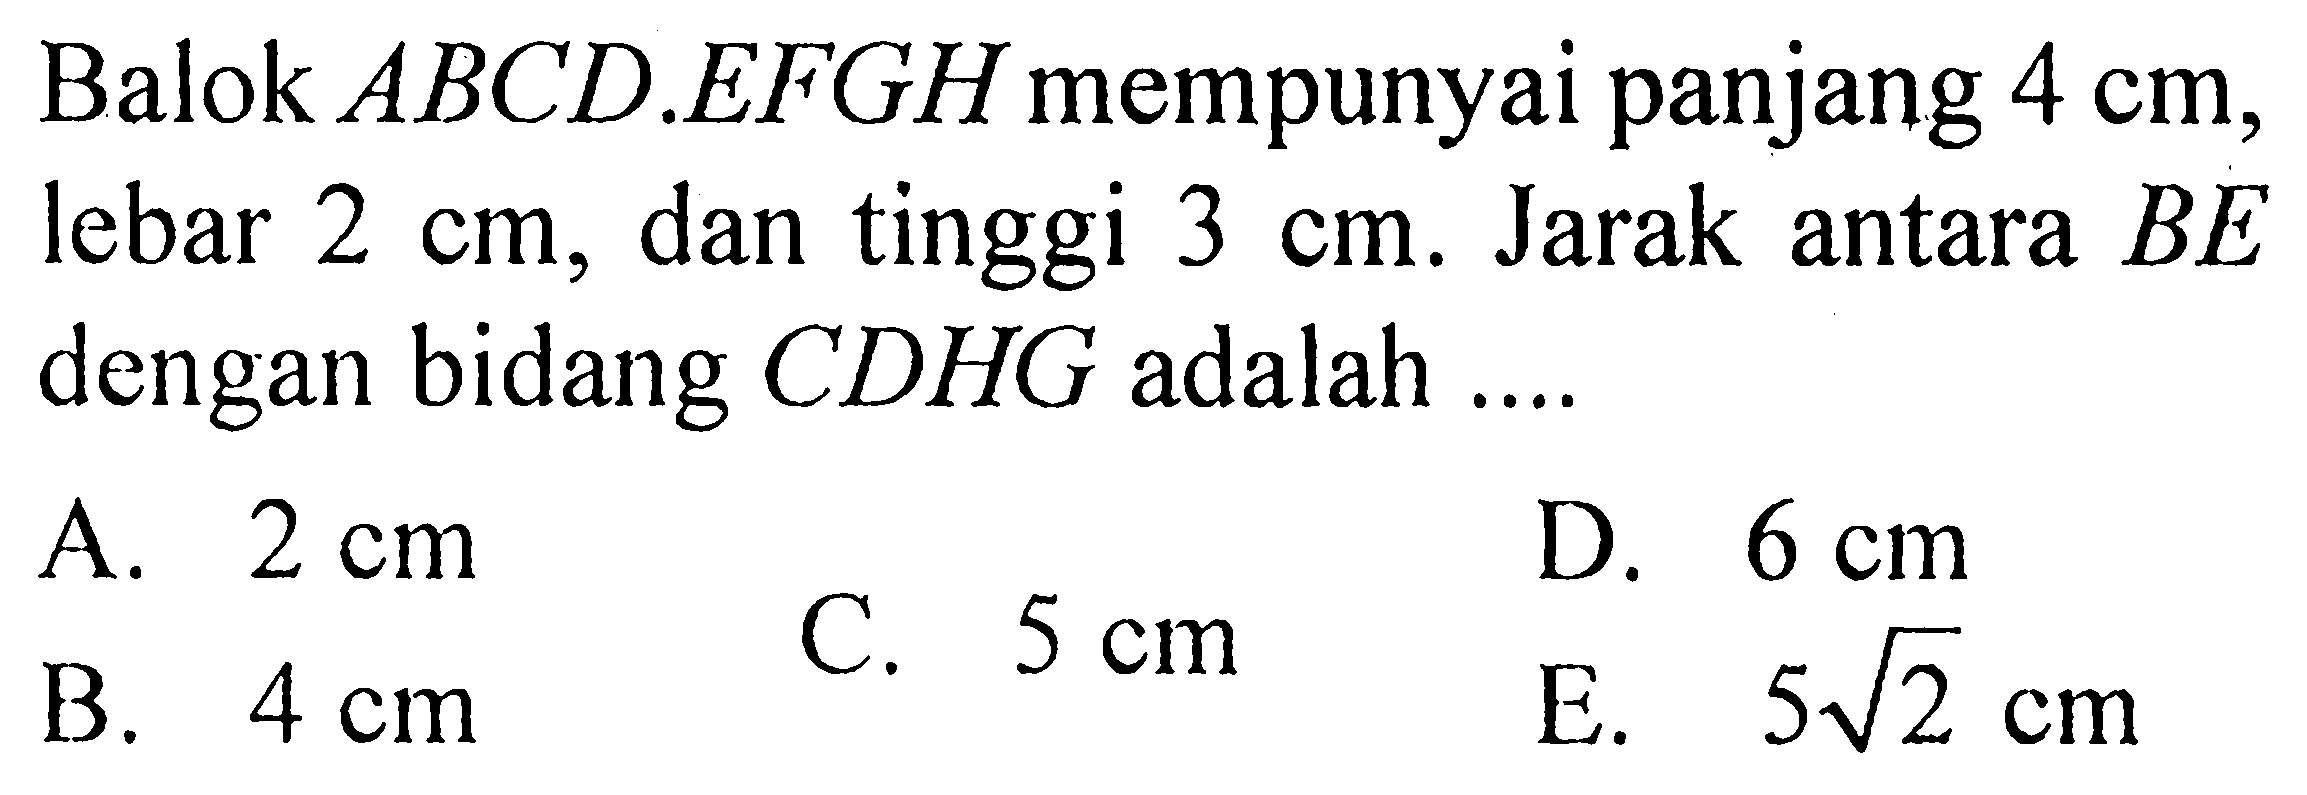 Balok  ABCD.EFGH  mempunyai panjang  4 cm , lebar  2 cm , dan tinggi  3 cm . Jarak antara  BE  dengan bidang  CDHG  adalah ....